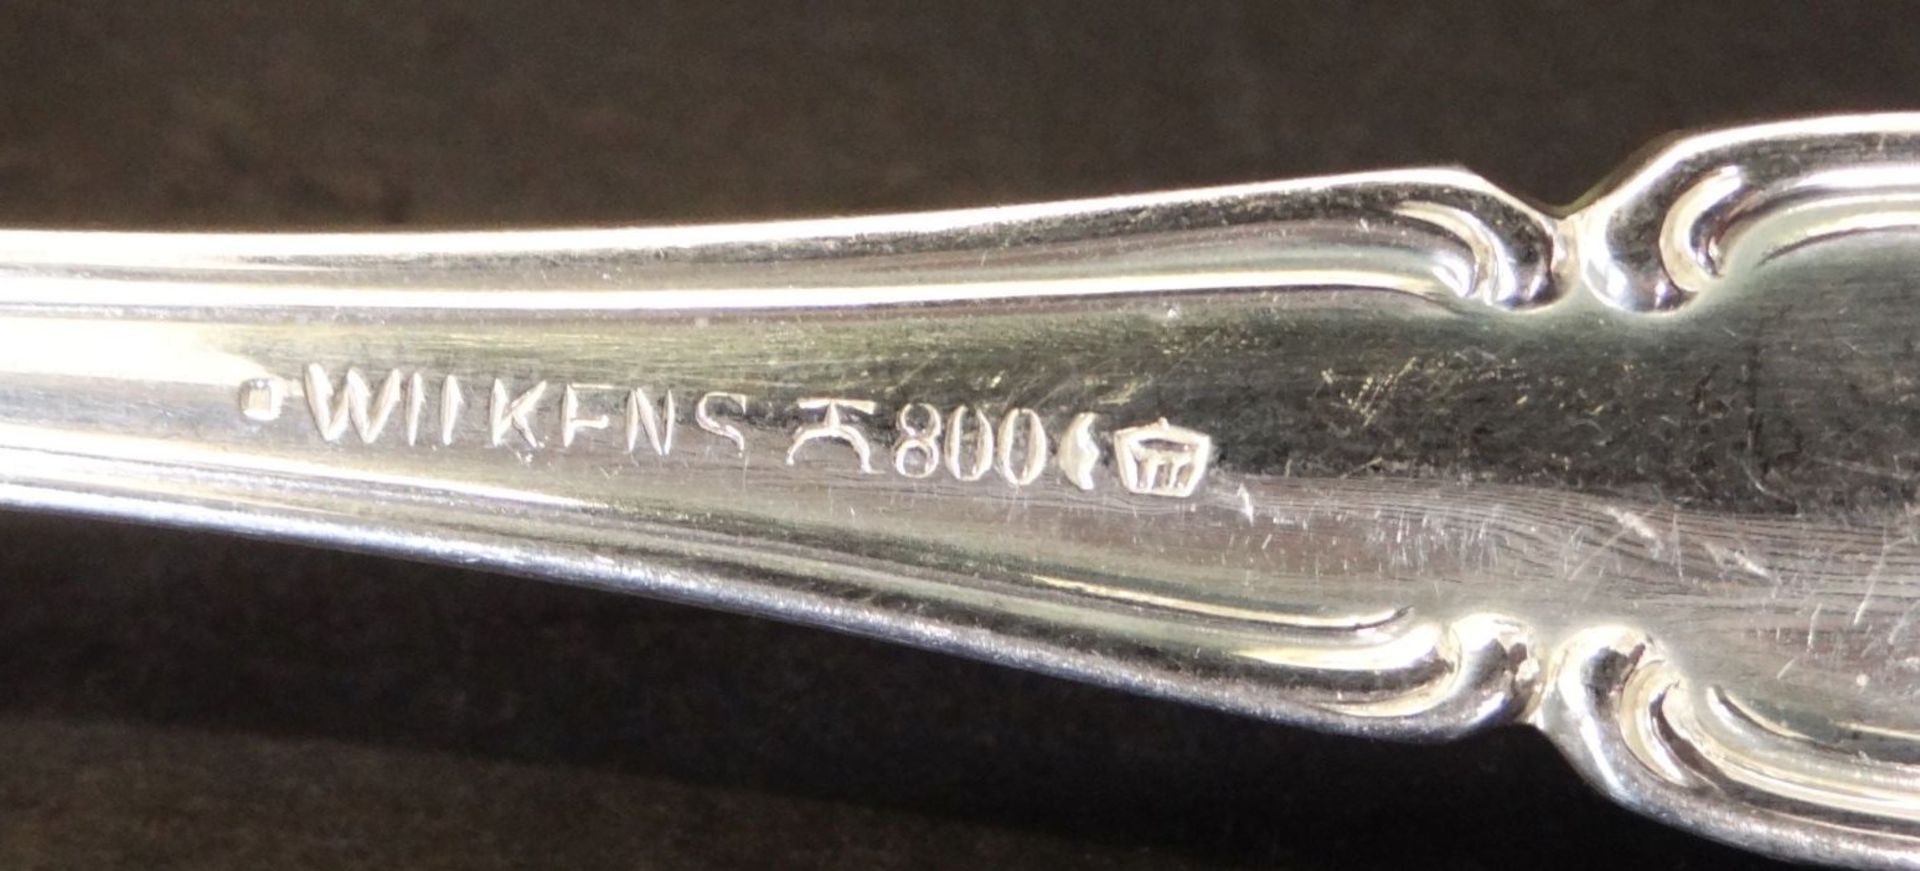 Silberbesteck für 6 Personen, -800- "Wilkens-Bremen", 30 Teile, gut erhalten, ohne Messer 870 gr., - Image 4 of 4